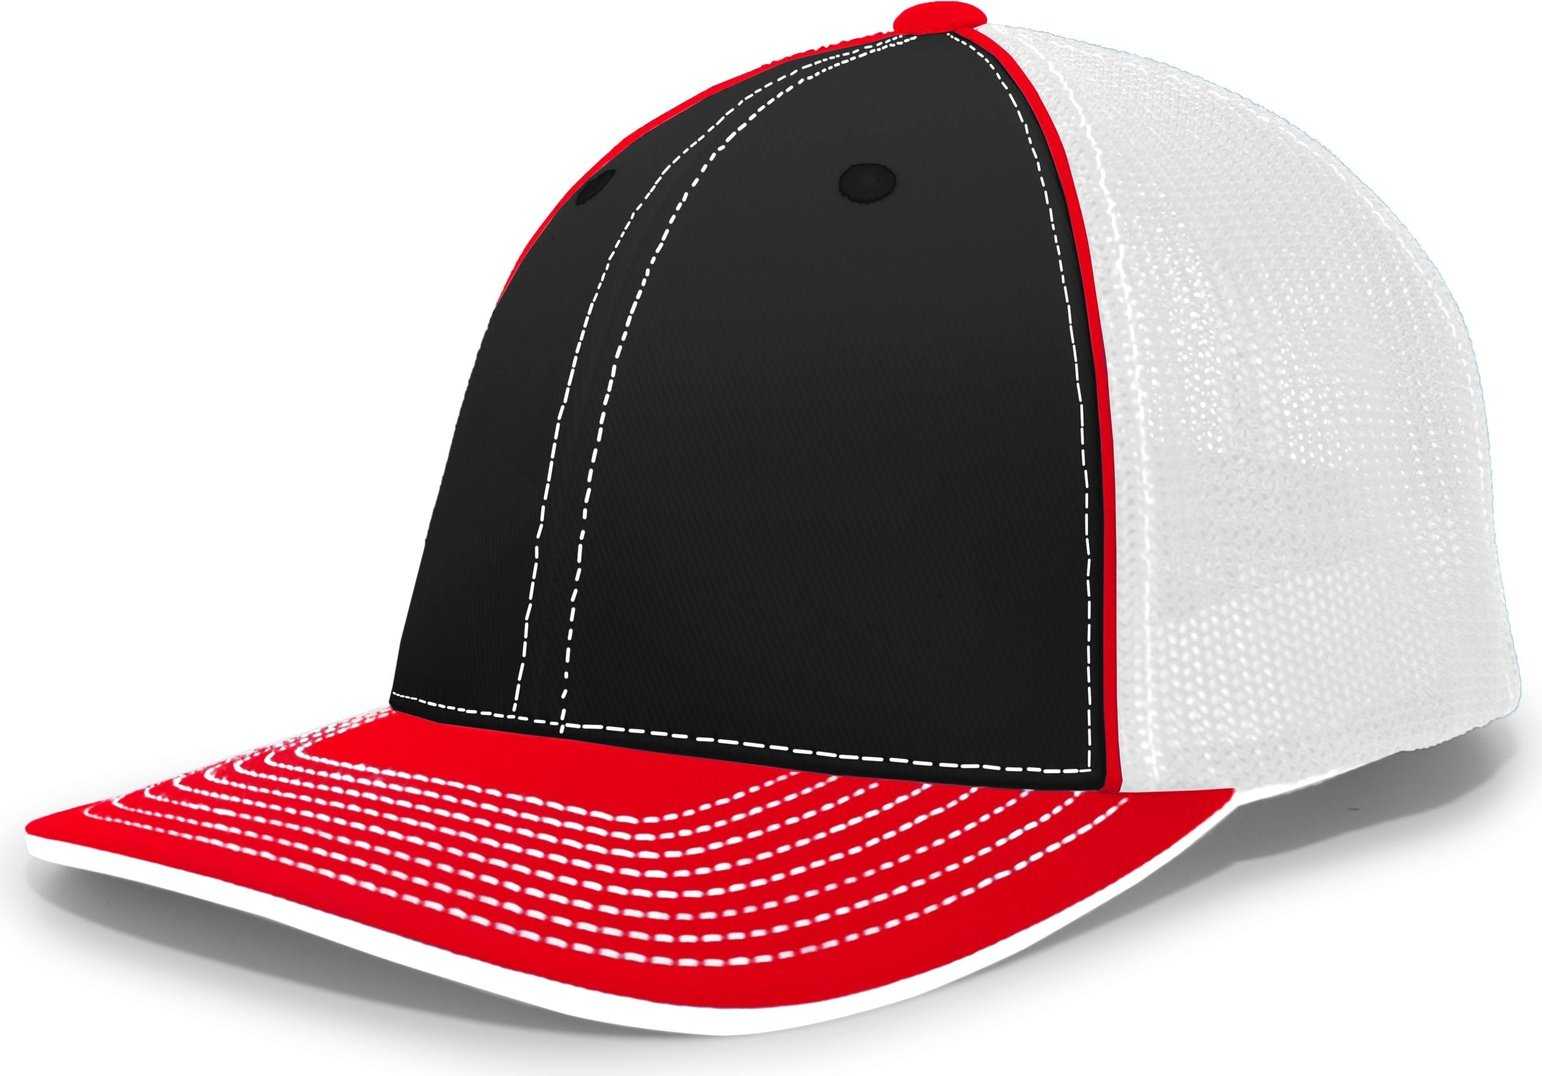 Pacific Headwear 404M Trucker Flexfit Cap - Black Red - HIT a Double